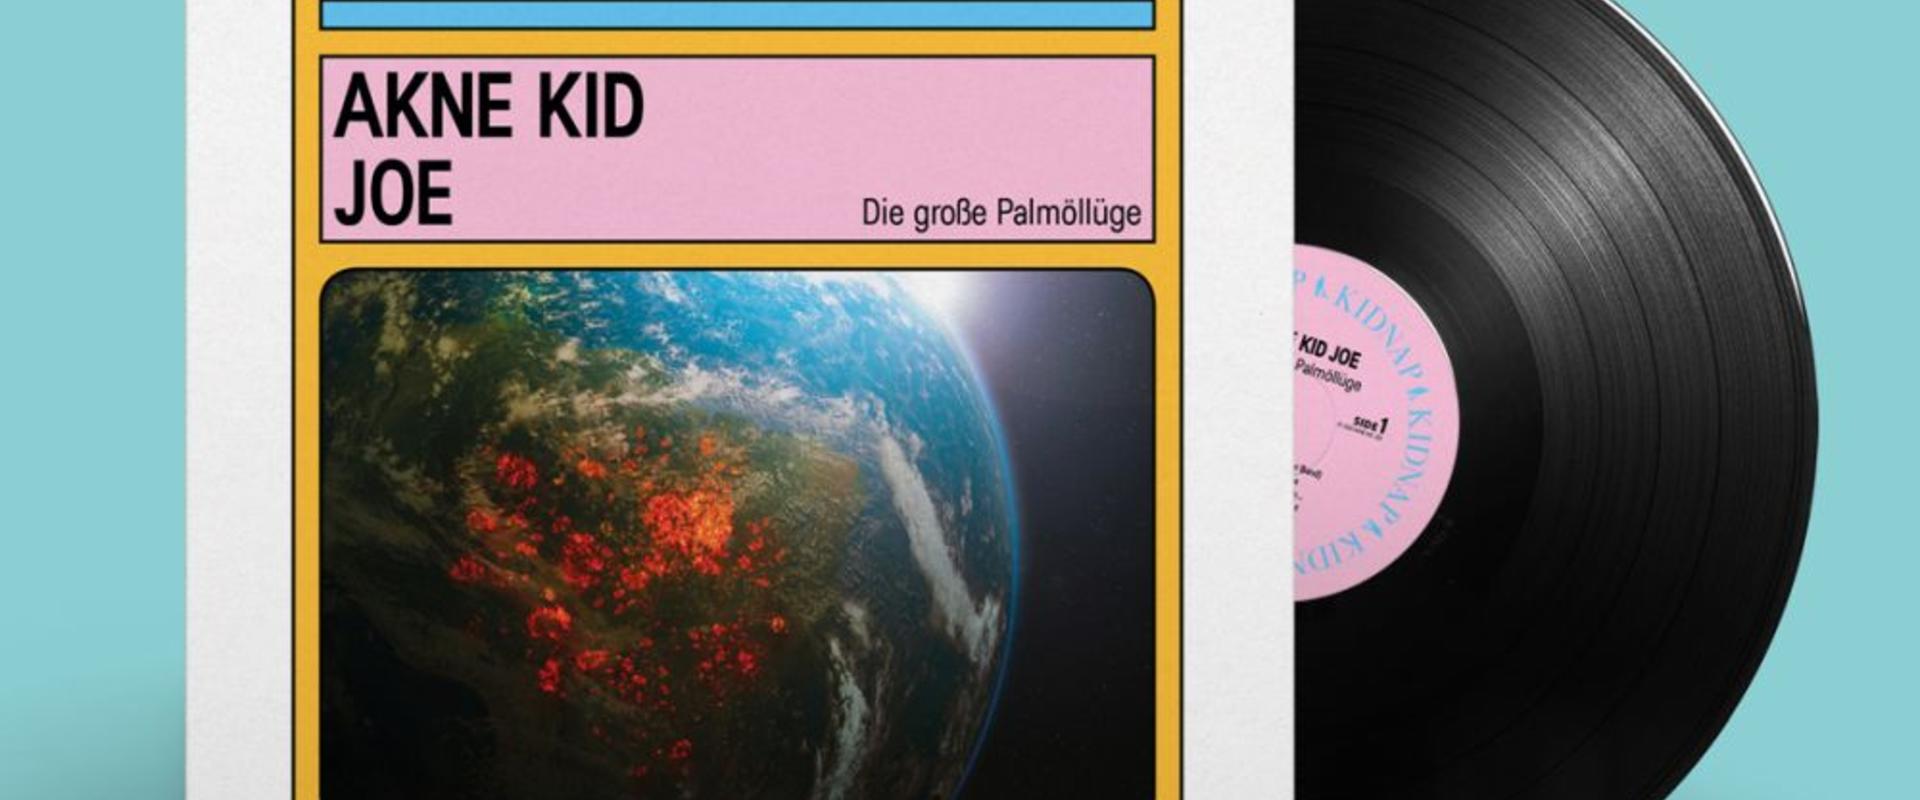 CD Neuerscheinung: Akne Kid Joe - Die große Palmöllüge